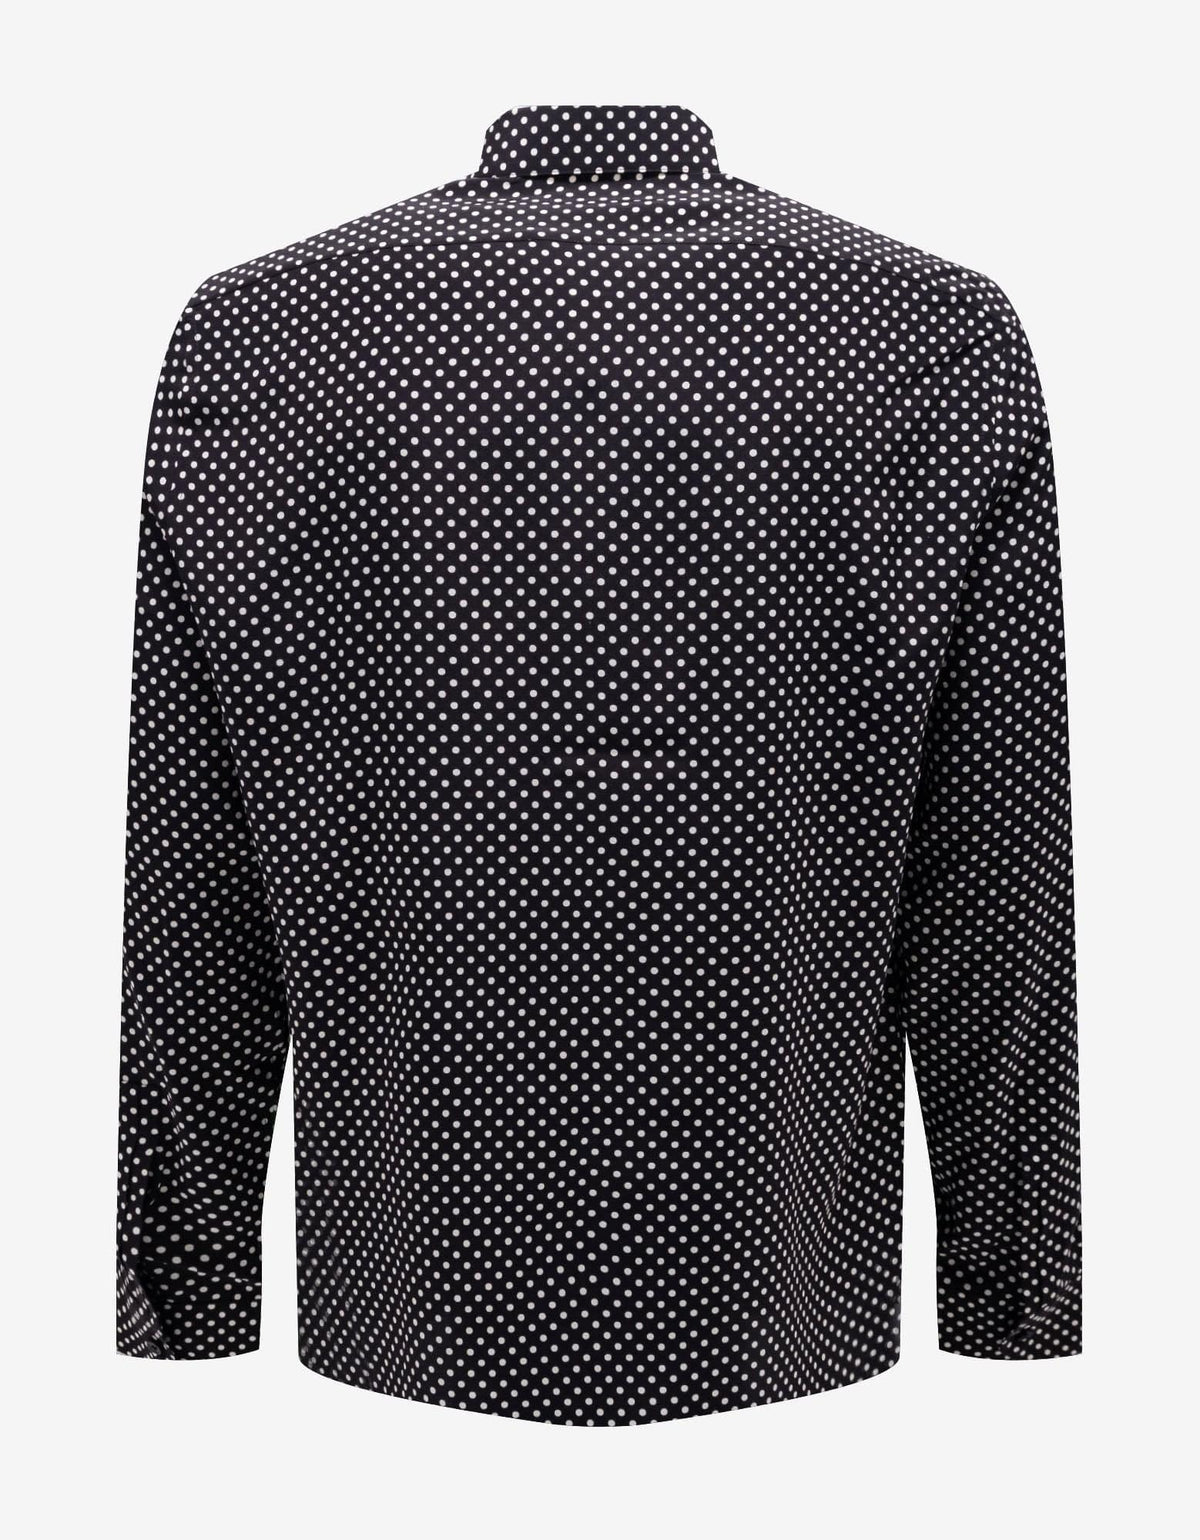 Saint Laurent Black Polka Dot Silk Shirt